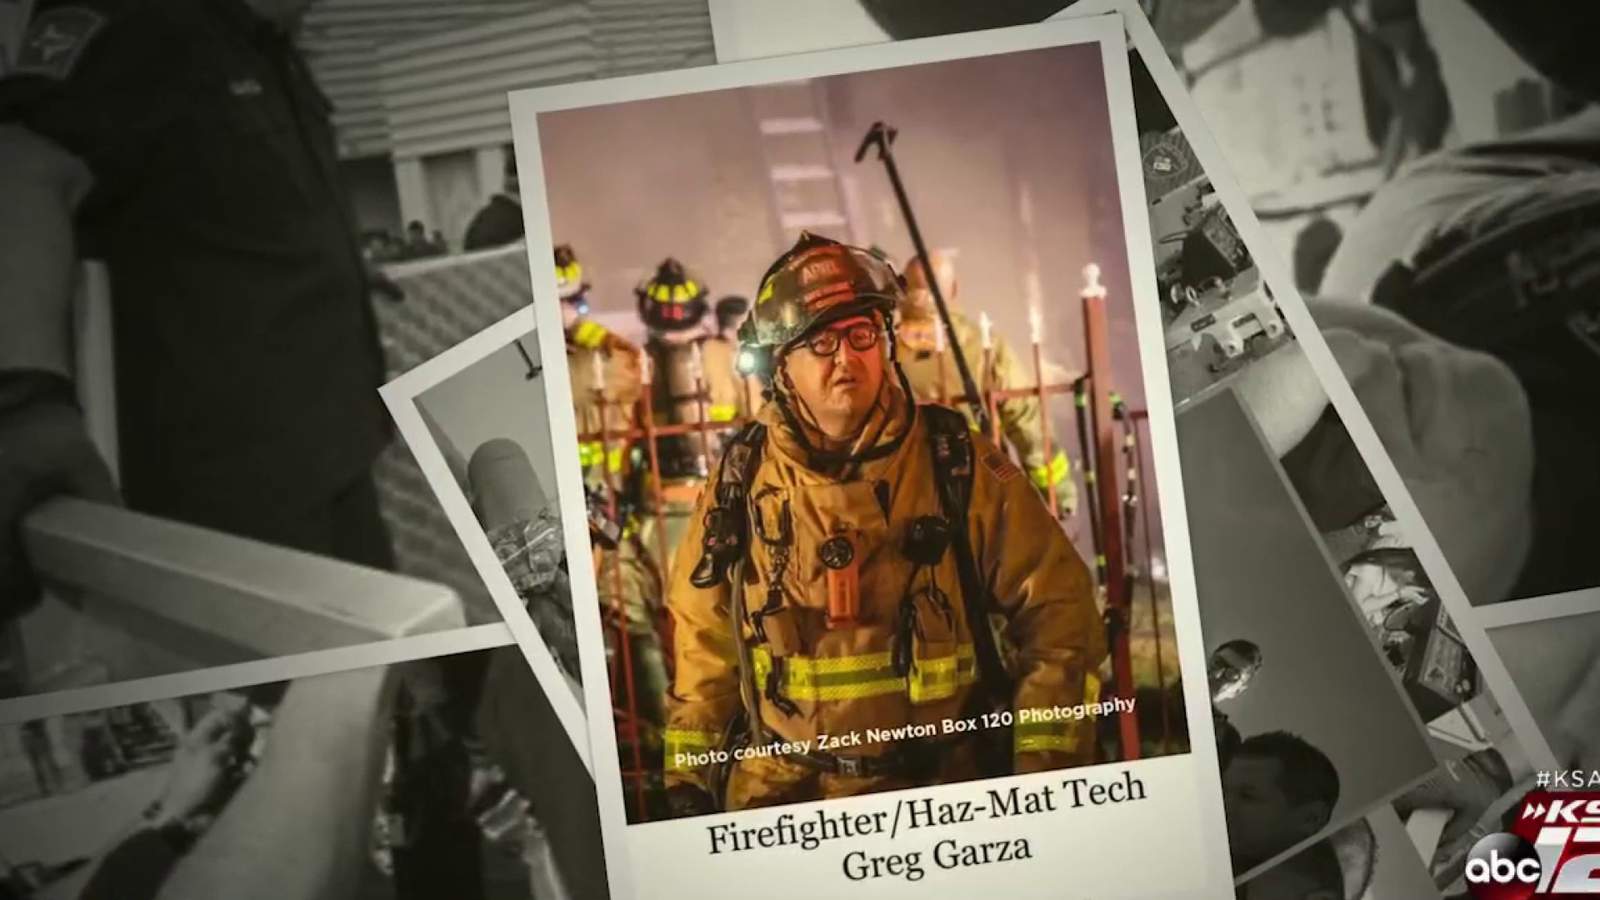 Hundreds expected for fundraiser honoring fallen firefighter Greg Garza